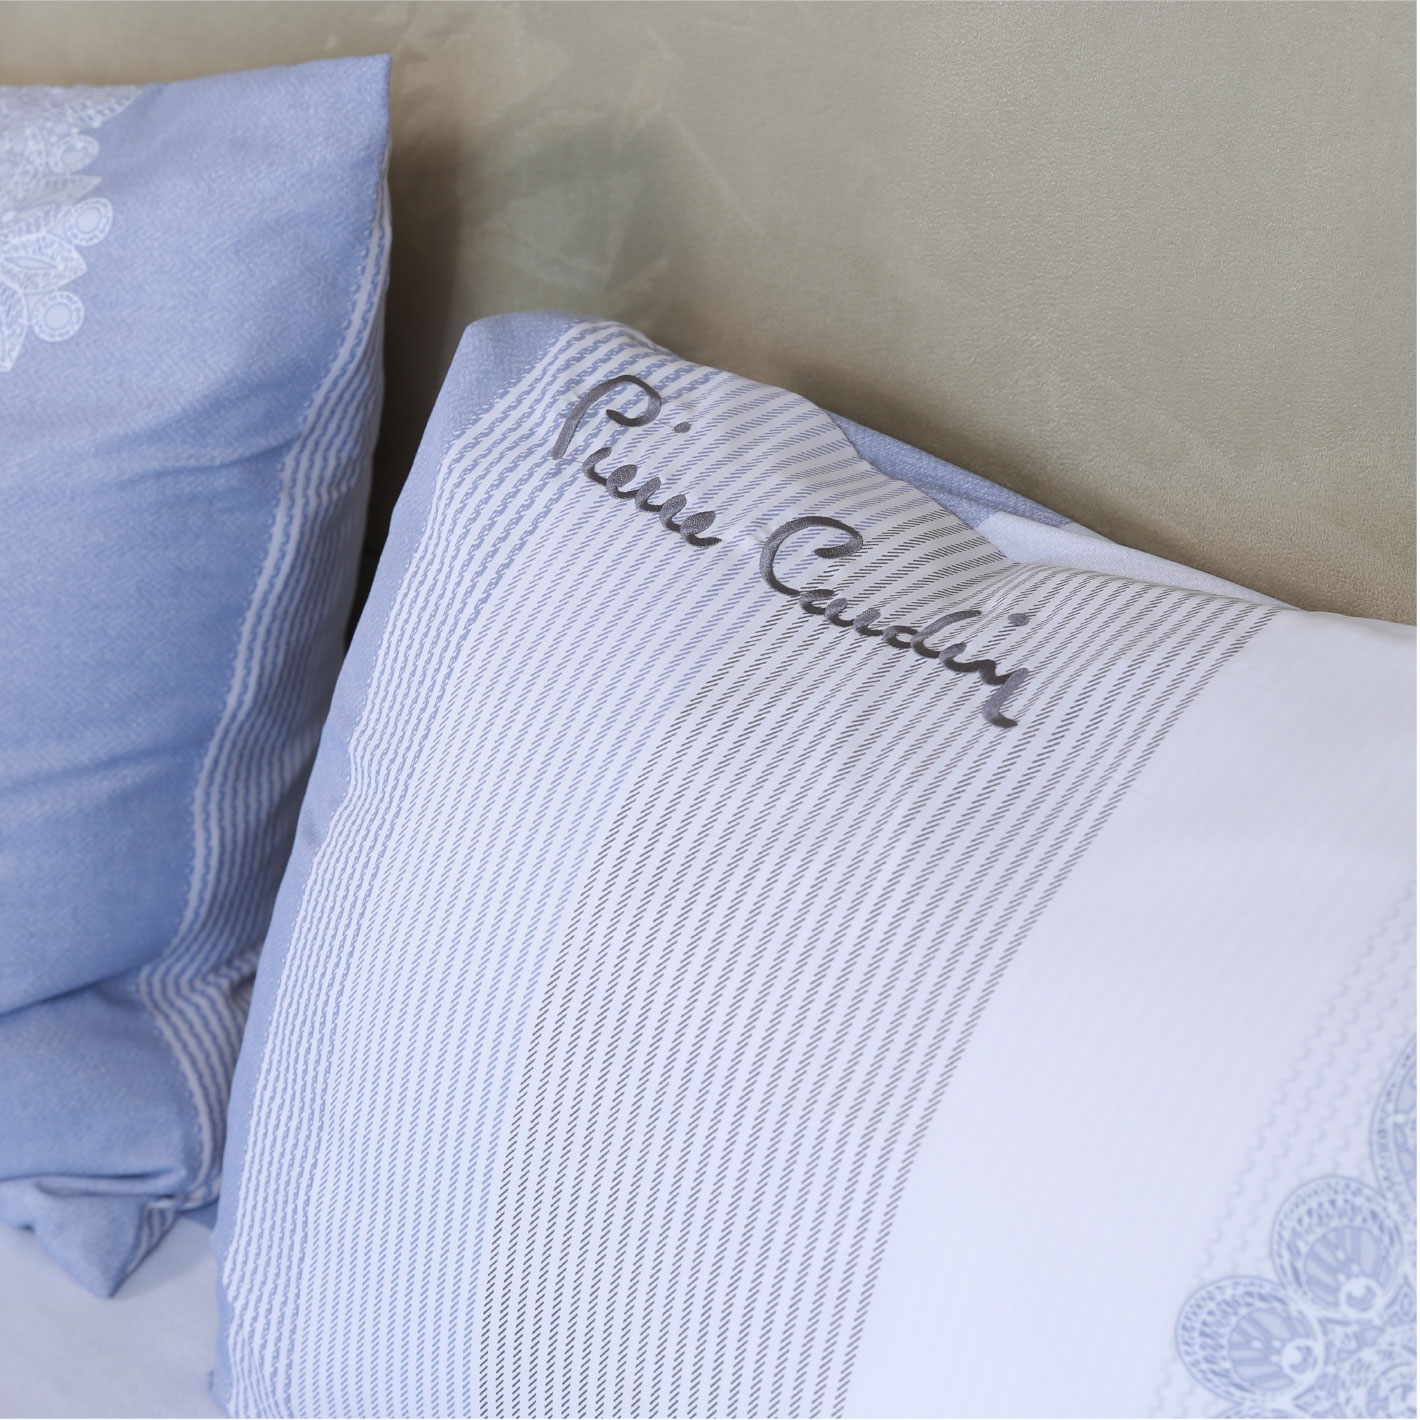 Bộ ga giường phòng ngủ 4 món Pierre Cardin, chất liệu Tencel cao cấp, mềm mại thoải mái, sang trọng - PCABDC 001